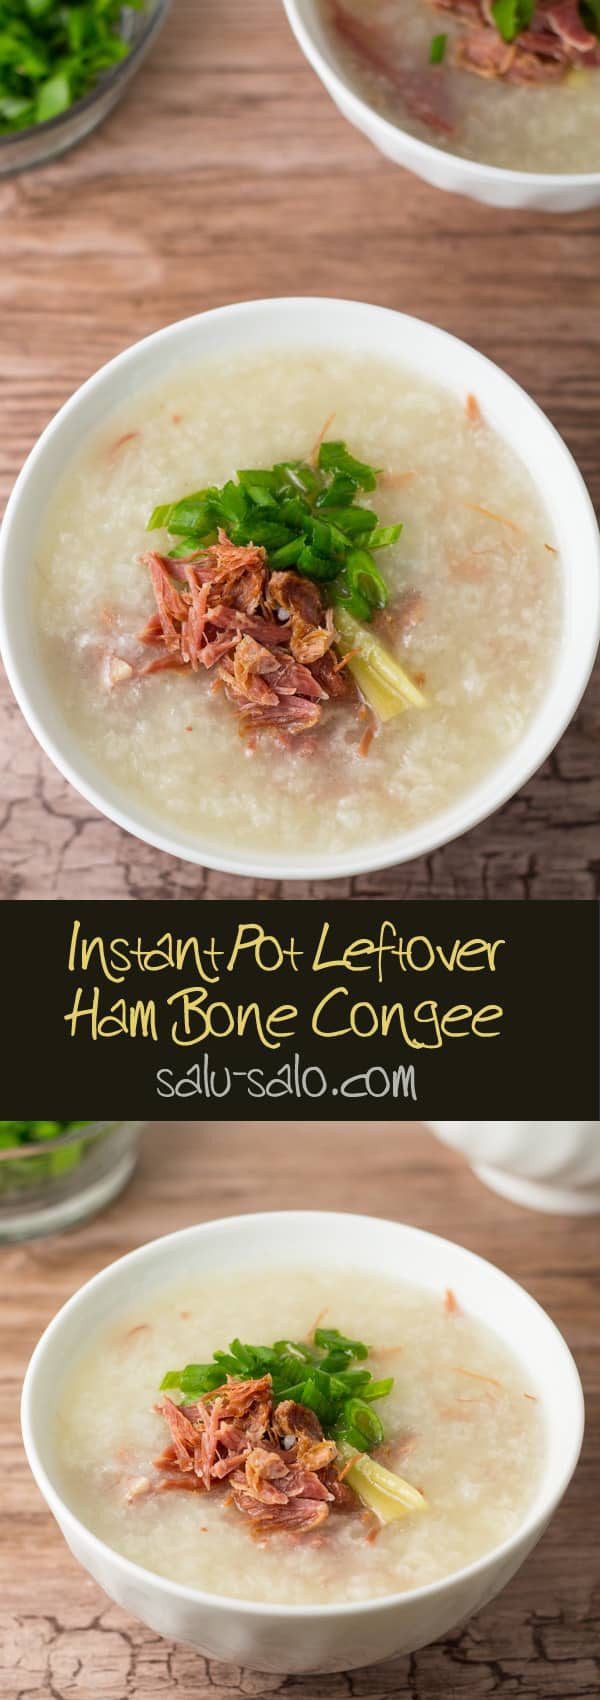 Instant Pot Leftover Ham Recipes
 Instant Pot Leftover Ham Bone Congee Salu Salo Recipes